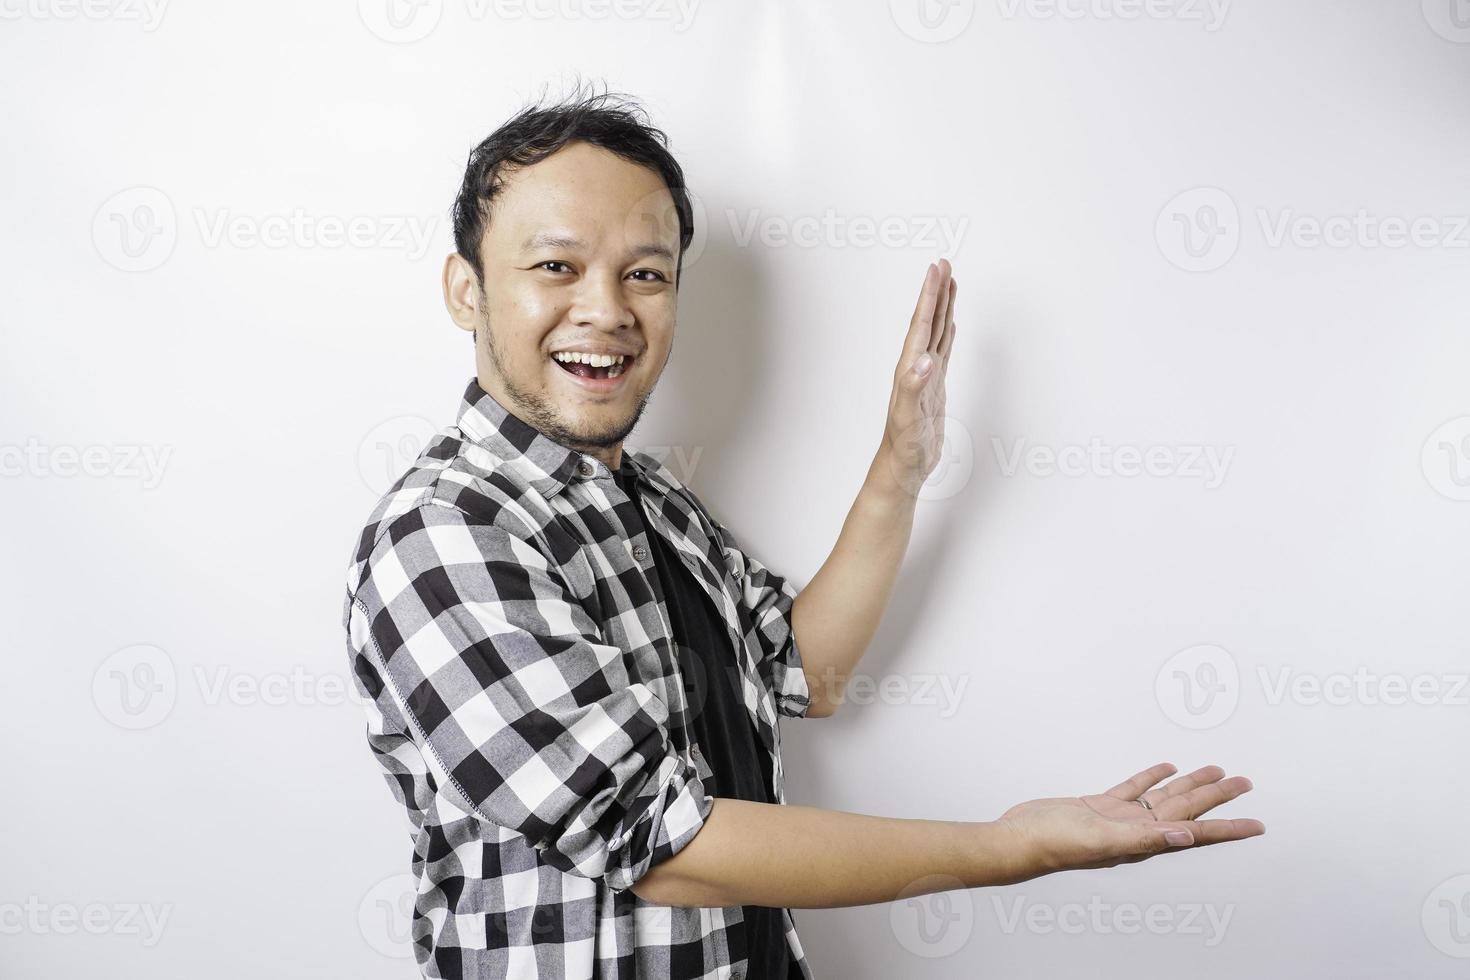 un homme asiatique excité portant une chemise tartan pointe vers l'espace de copie à côté de lui, isolé sur fond blanc photo